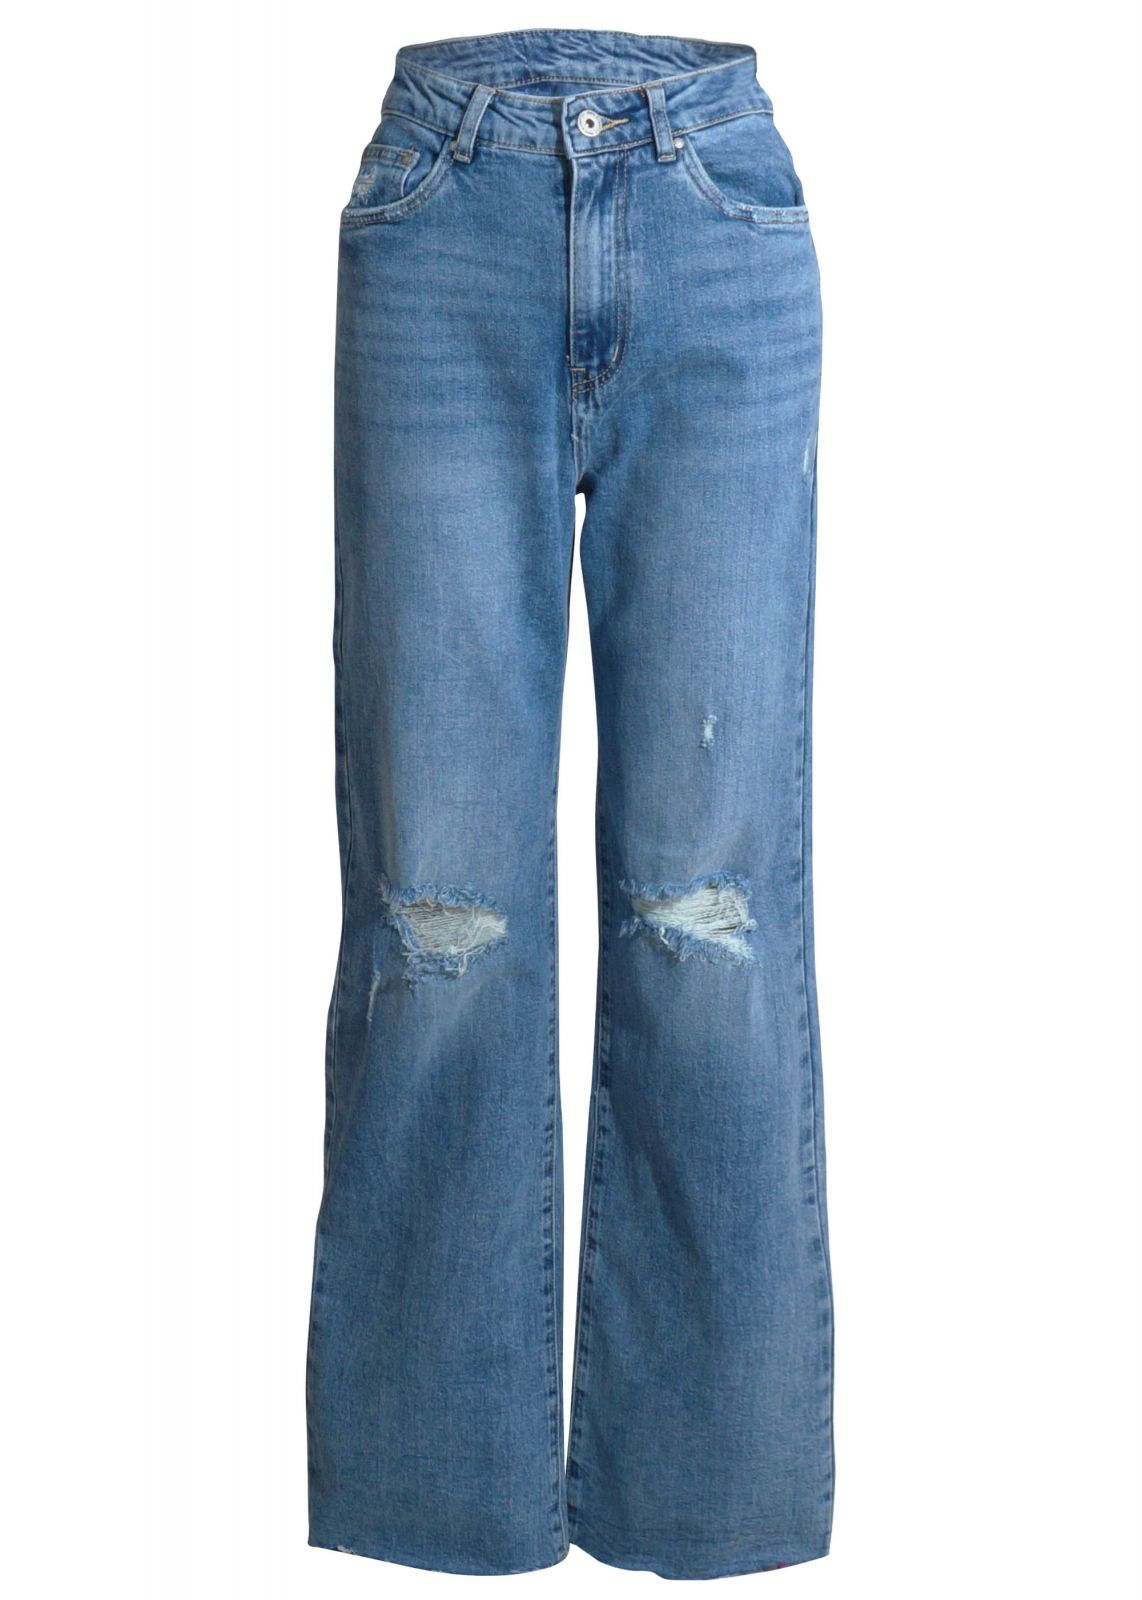 Γυναικεία παντελόνα jean με σκισίματα. Denim Collection.